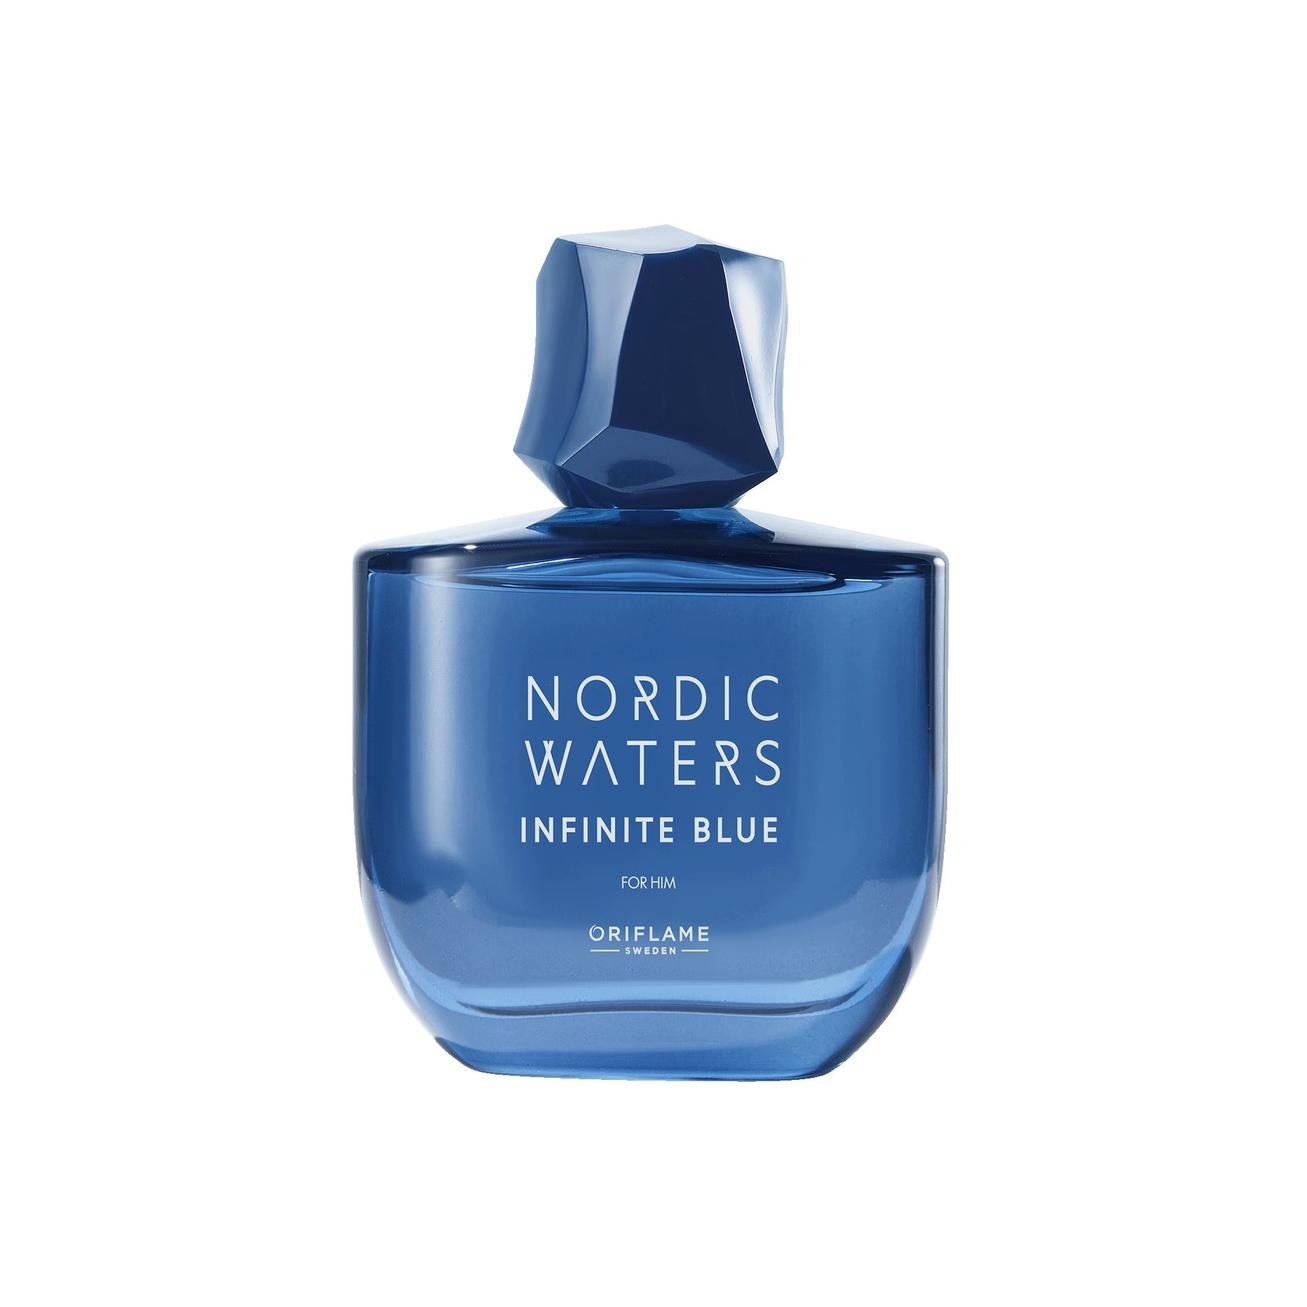 Tilbud: Infinite Blue for Him Eau de Parfum kr 369 på Oriflame